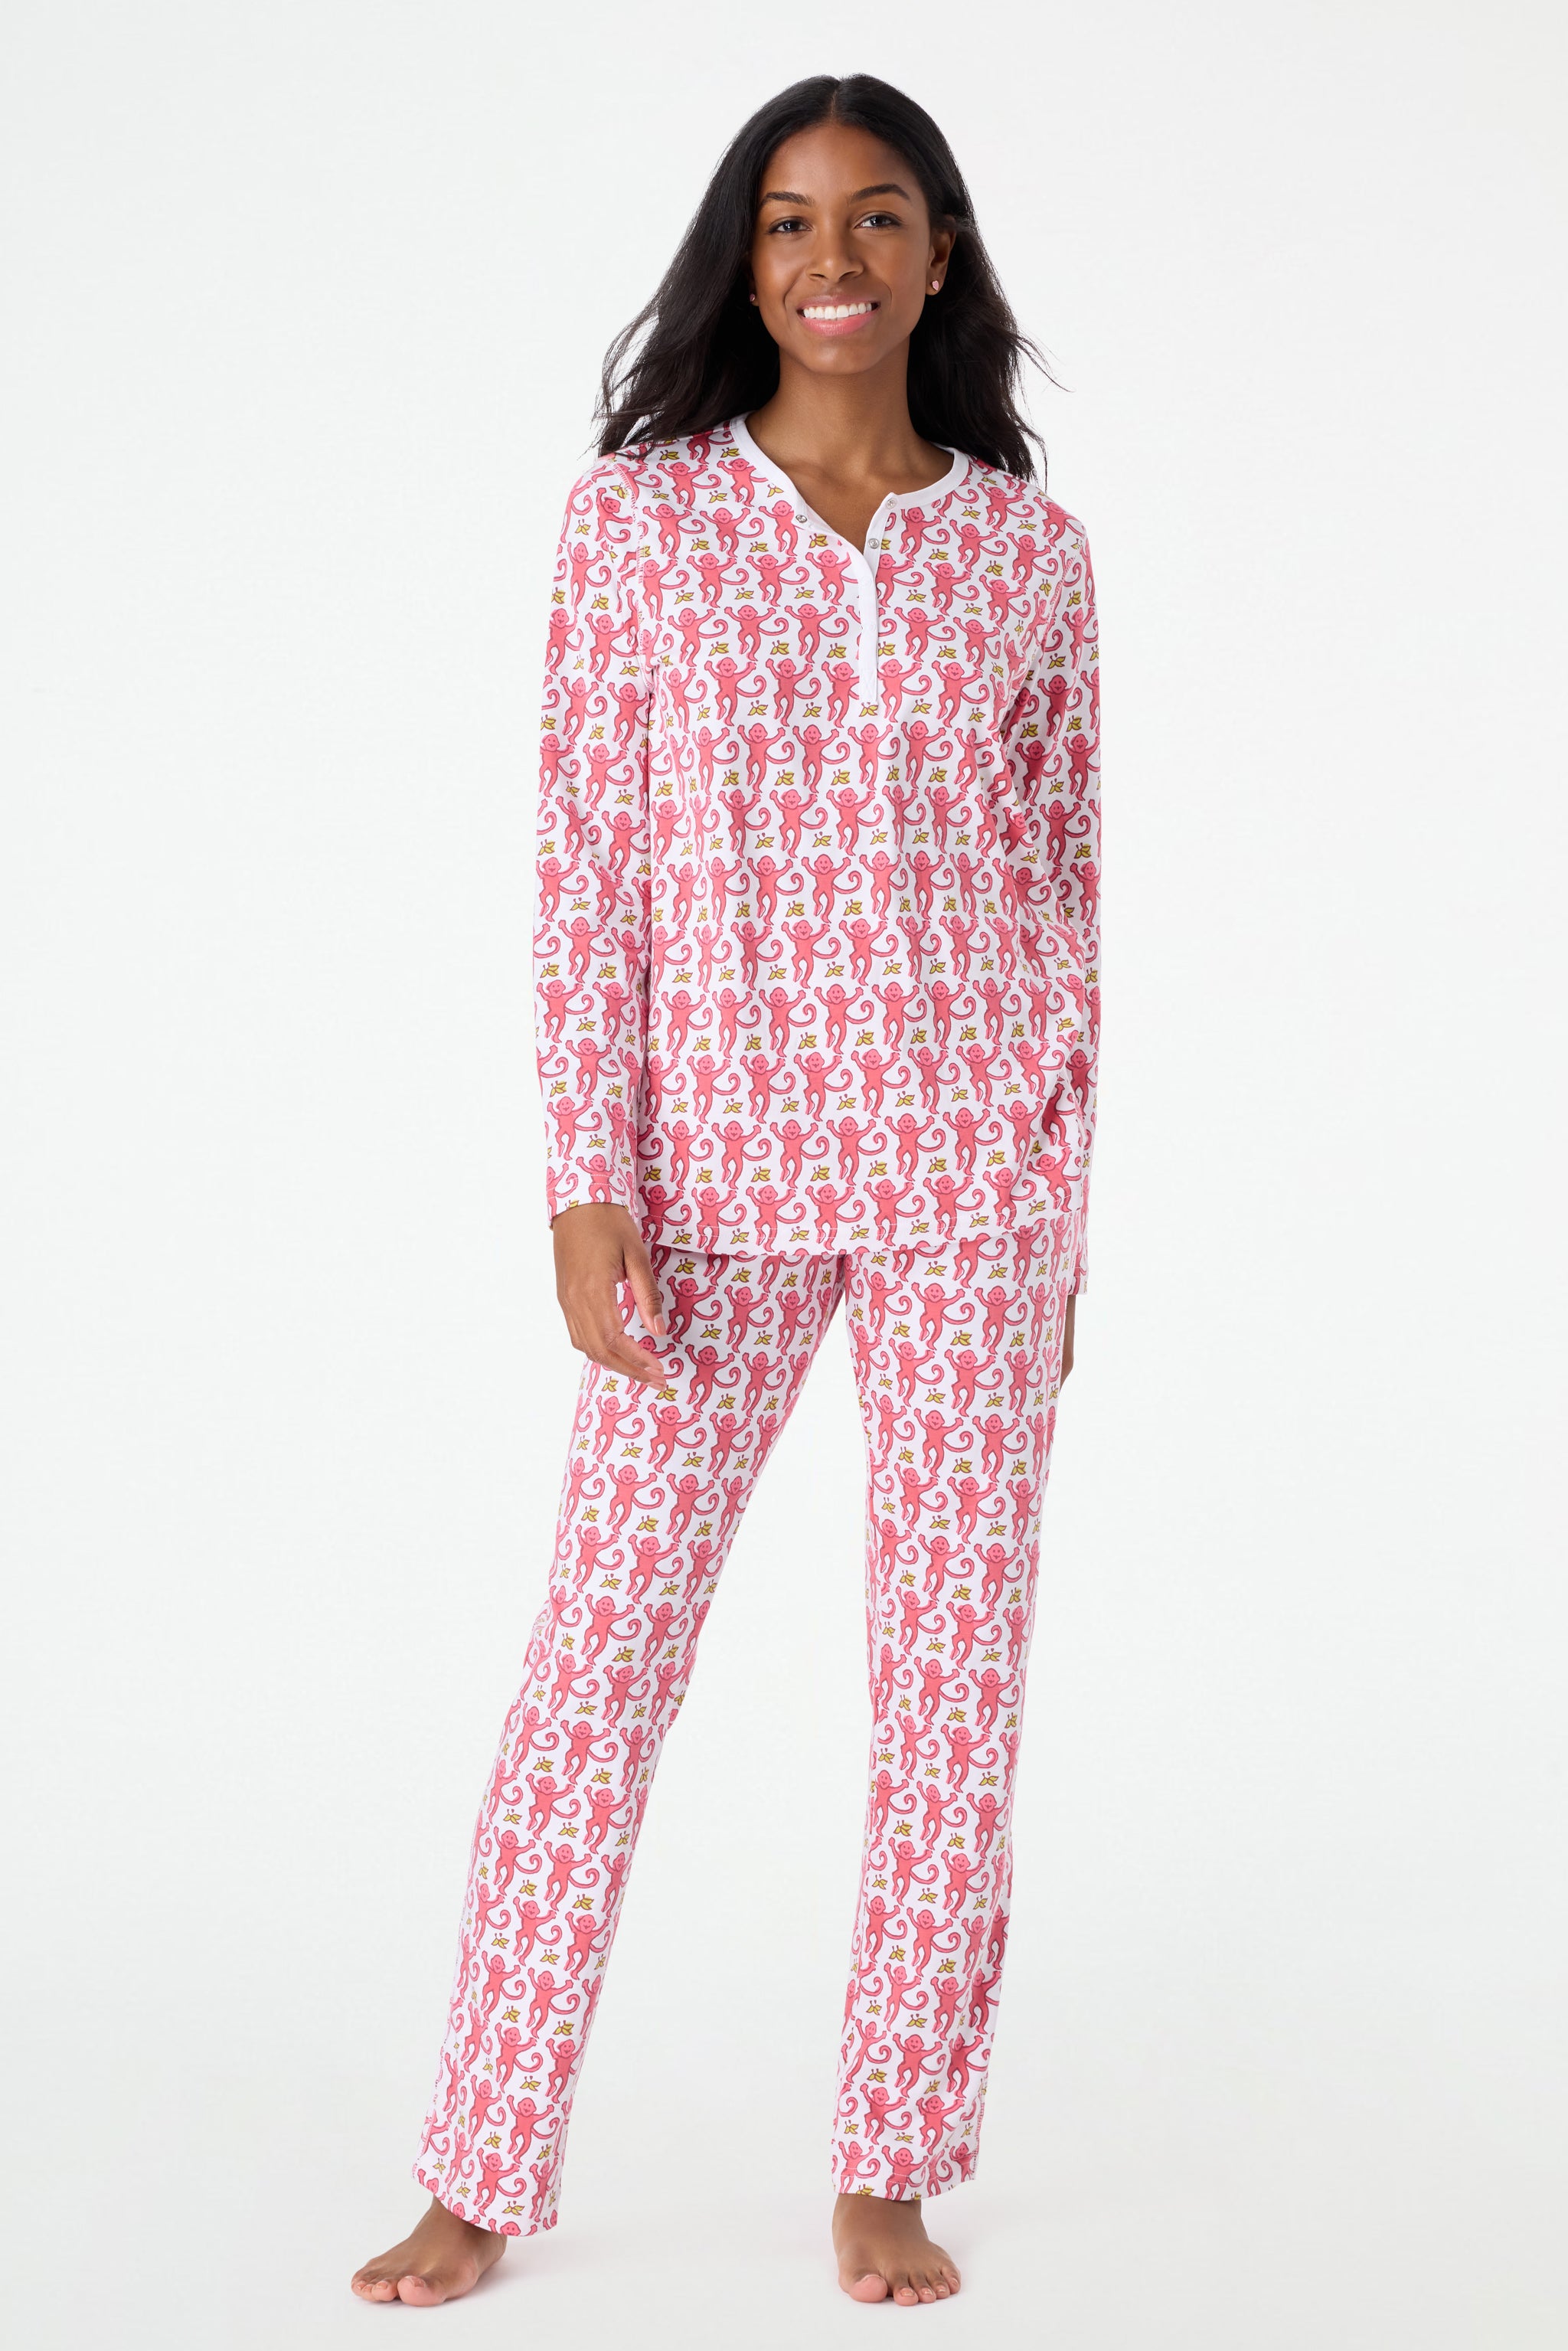 Monogrammed Pajamas, White, Pink, Printed & More